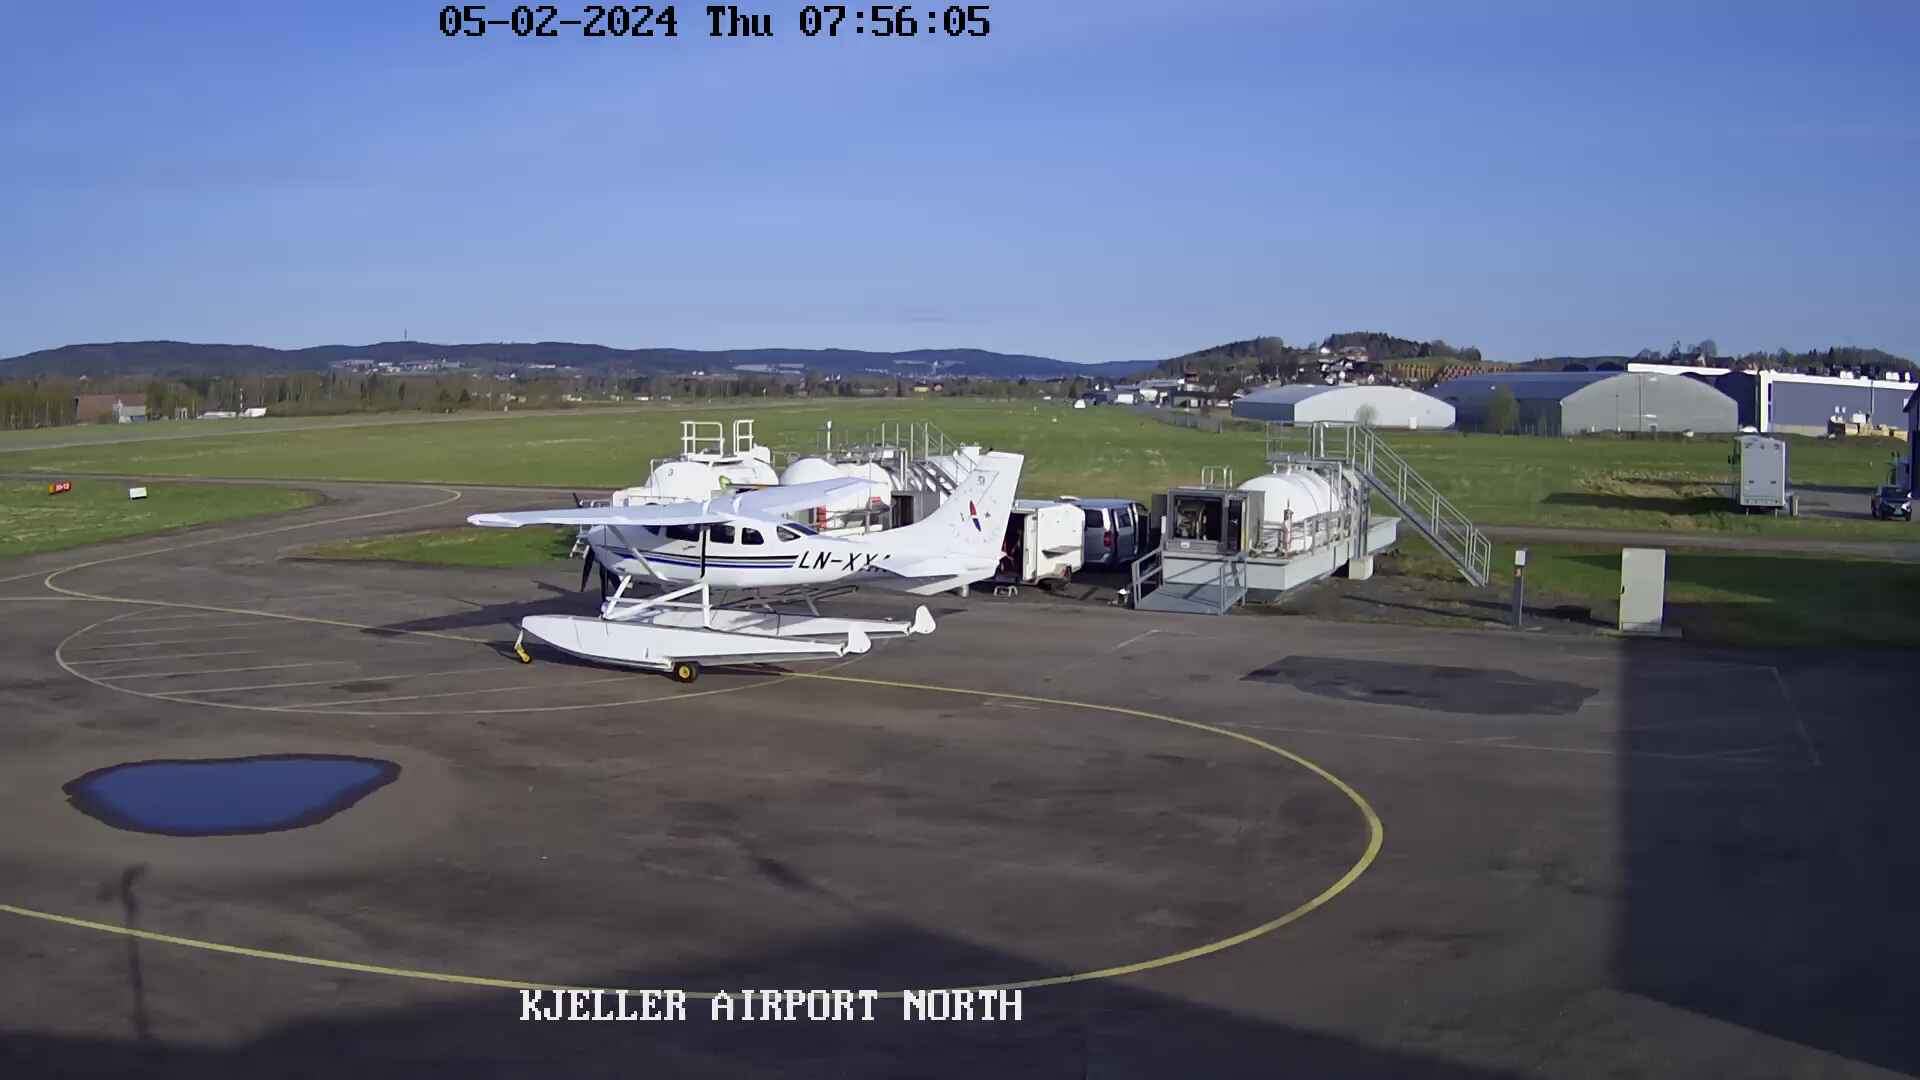 Kjeller - airport; wind sock